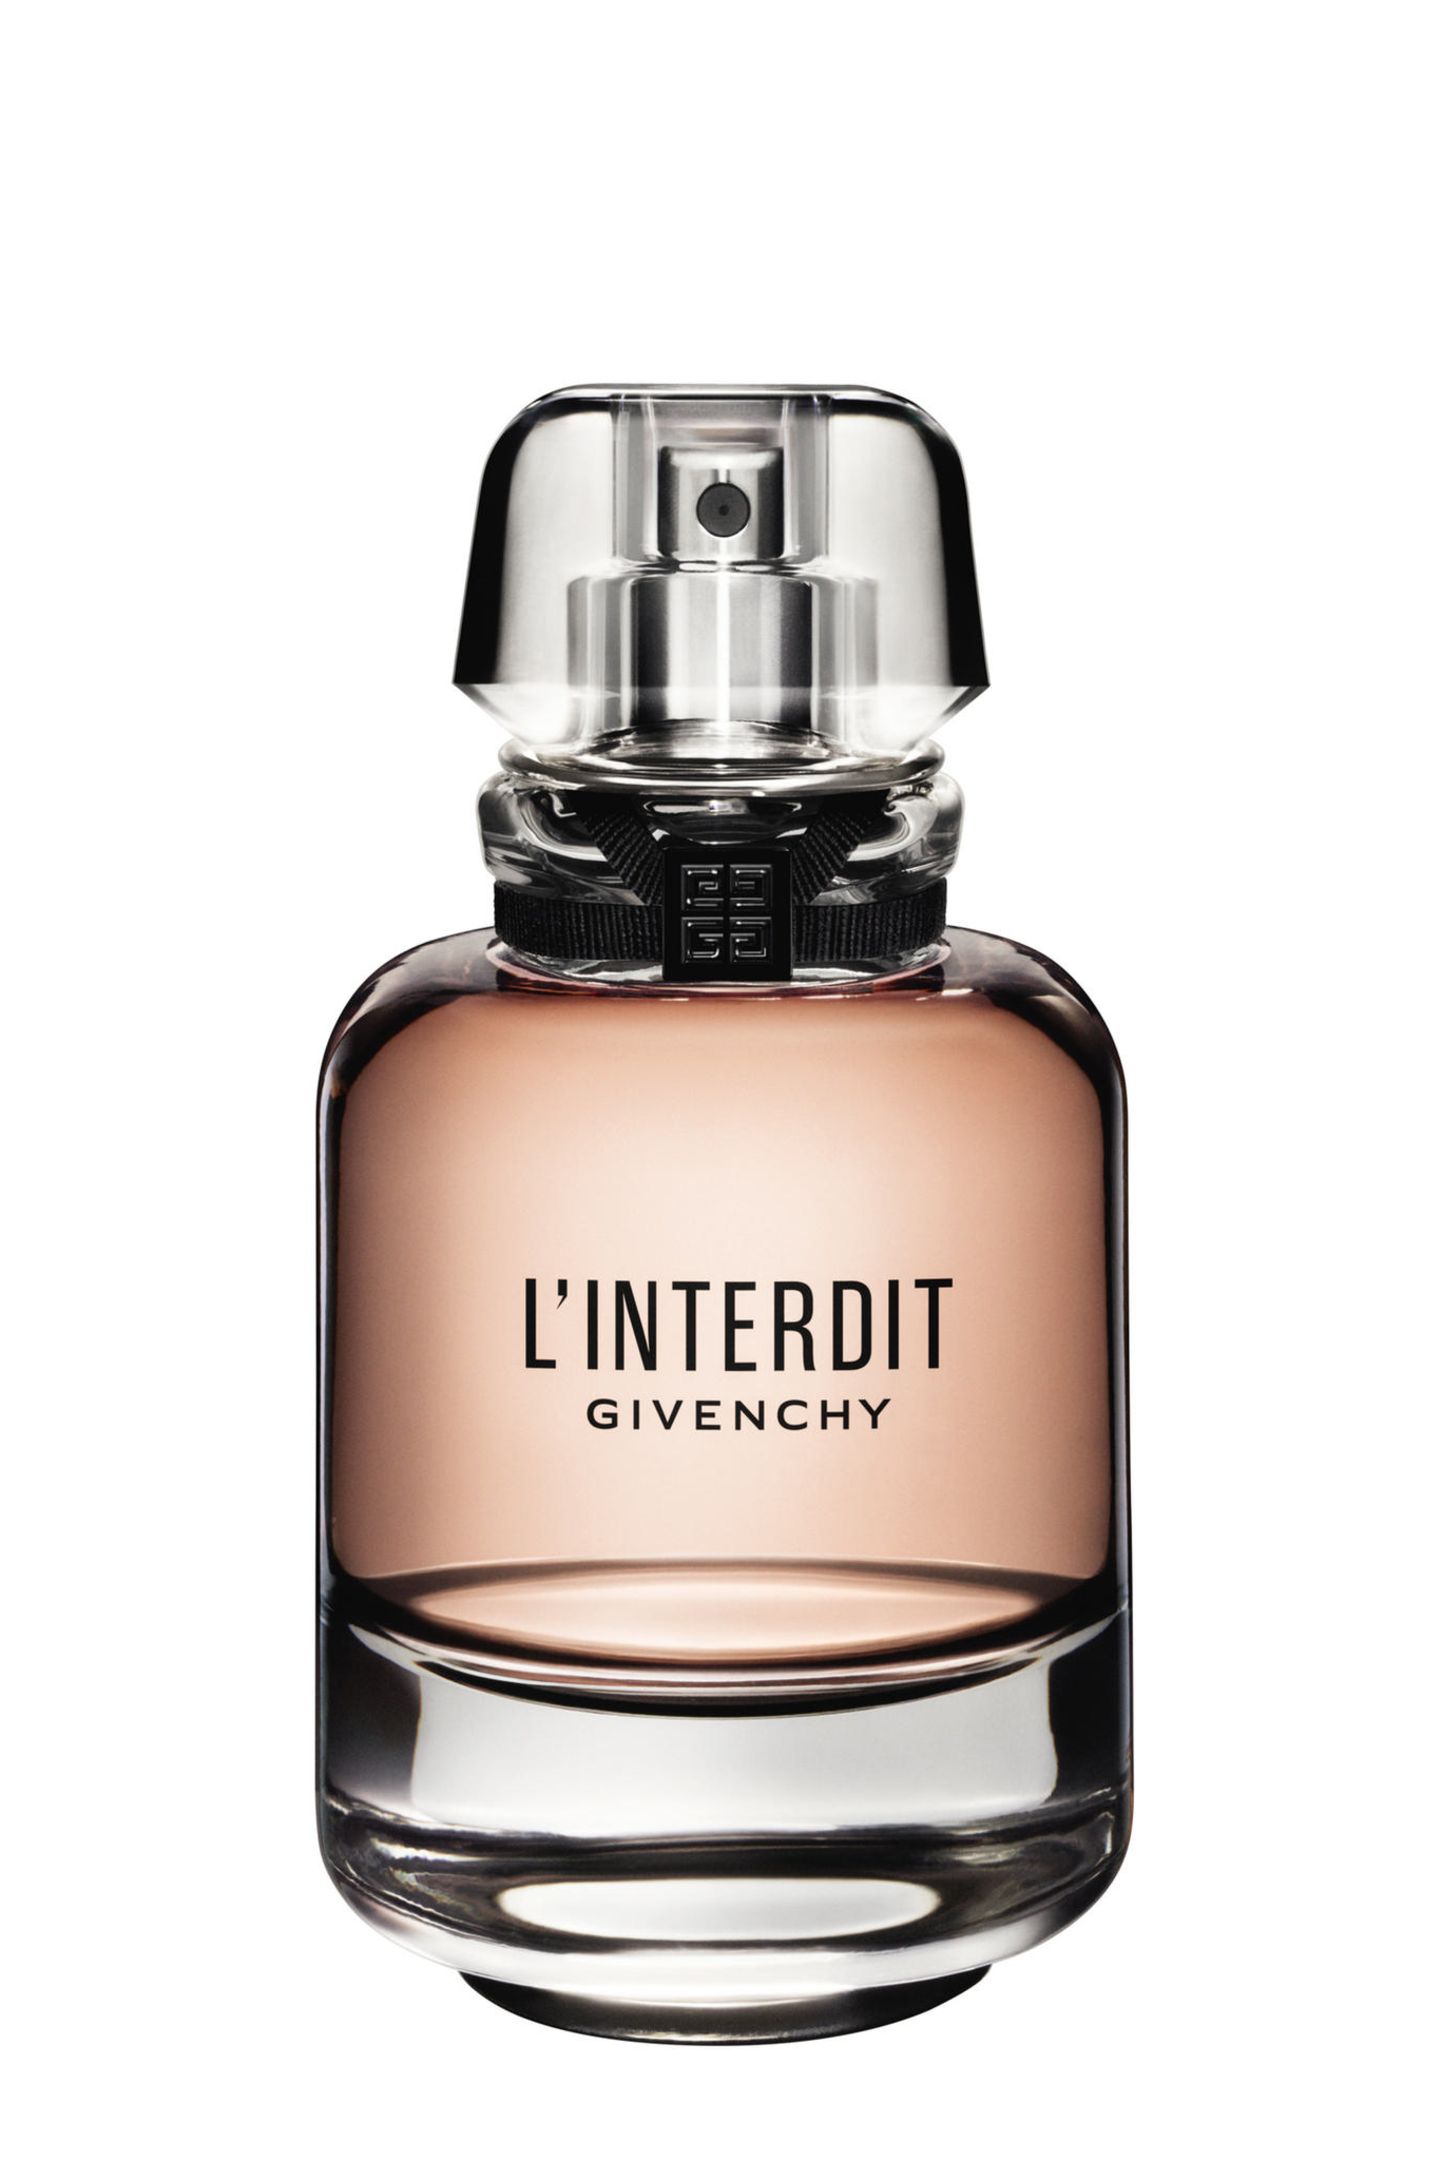 "L'Interdit 1957" war Givenchys erster verwegener Duft, die Neuauflage des Klassikers ist ein Loblied auf die Freiheit - verführerisch wie eh und je. Verschenken Sie genau dieses Gefühl! "L'Interdit" von Givenchy, rund 88 Euro (80ml) 